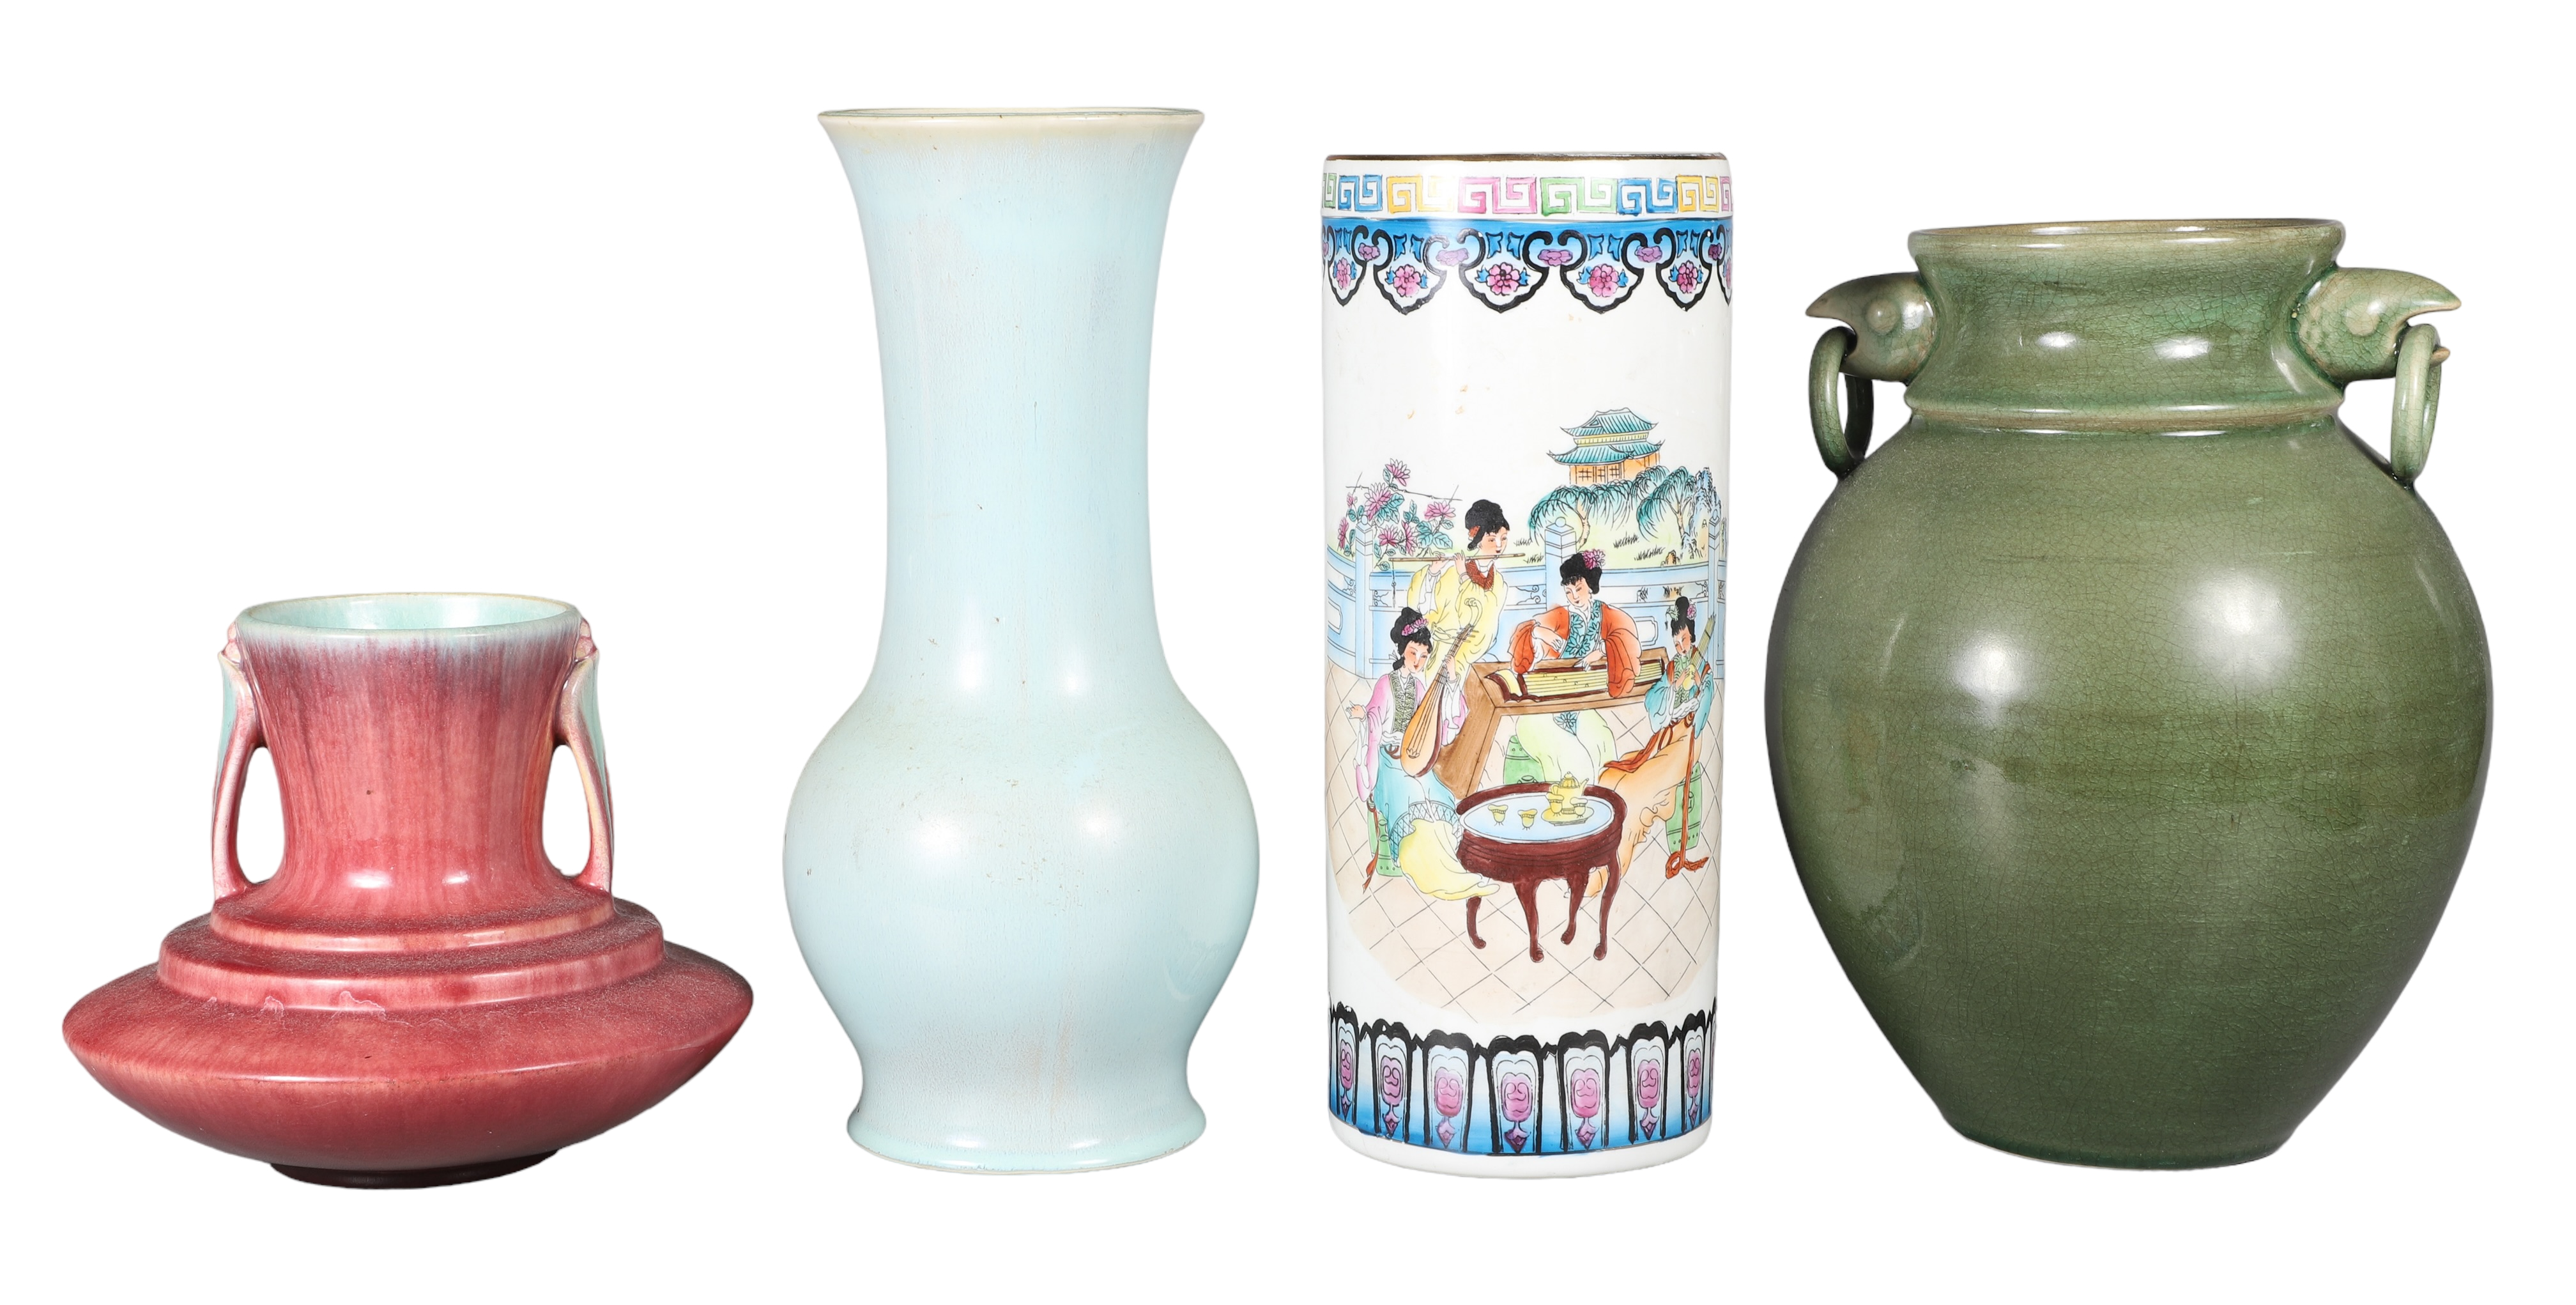  4 Asian style porcelain vases  31800e